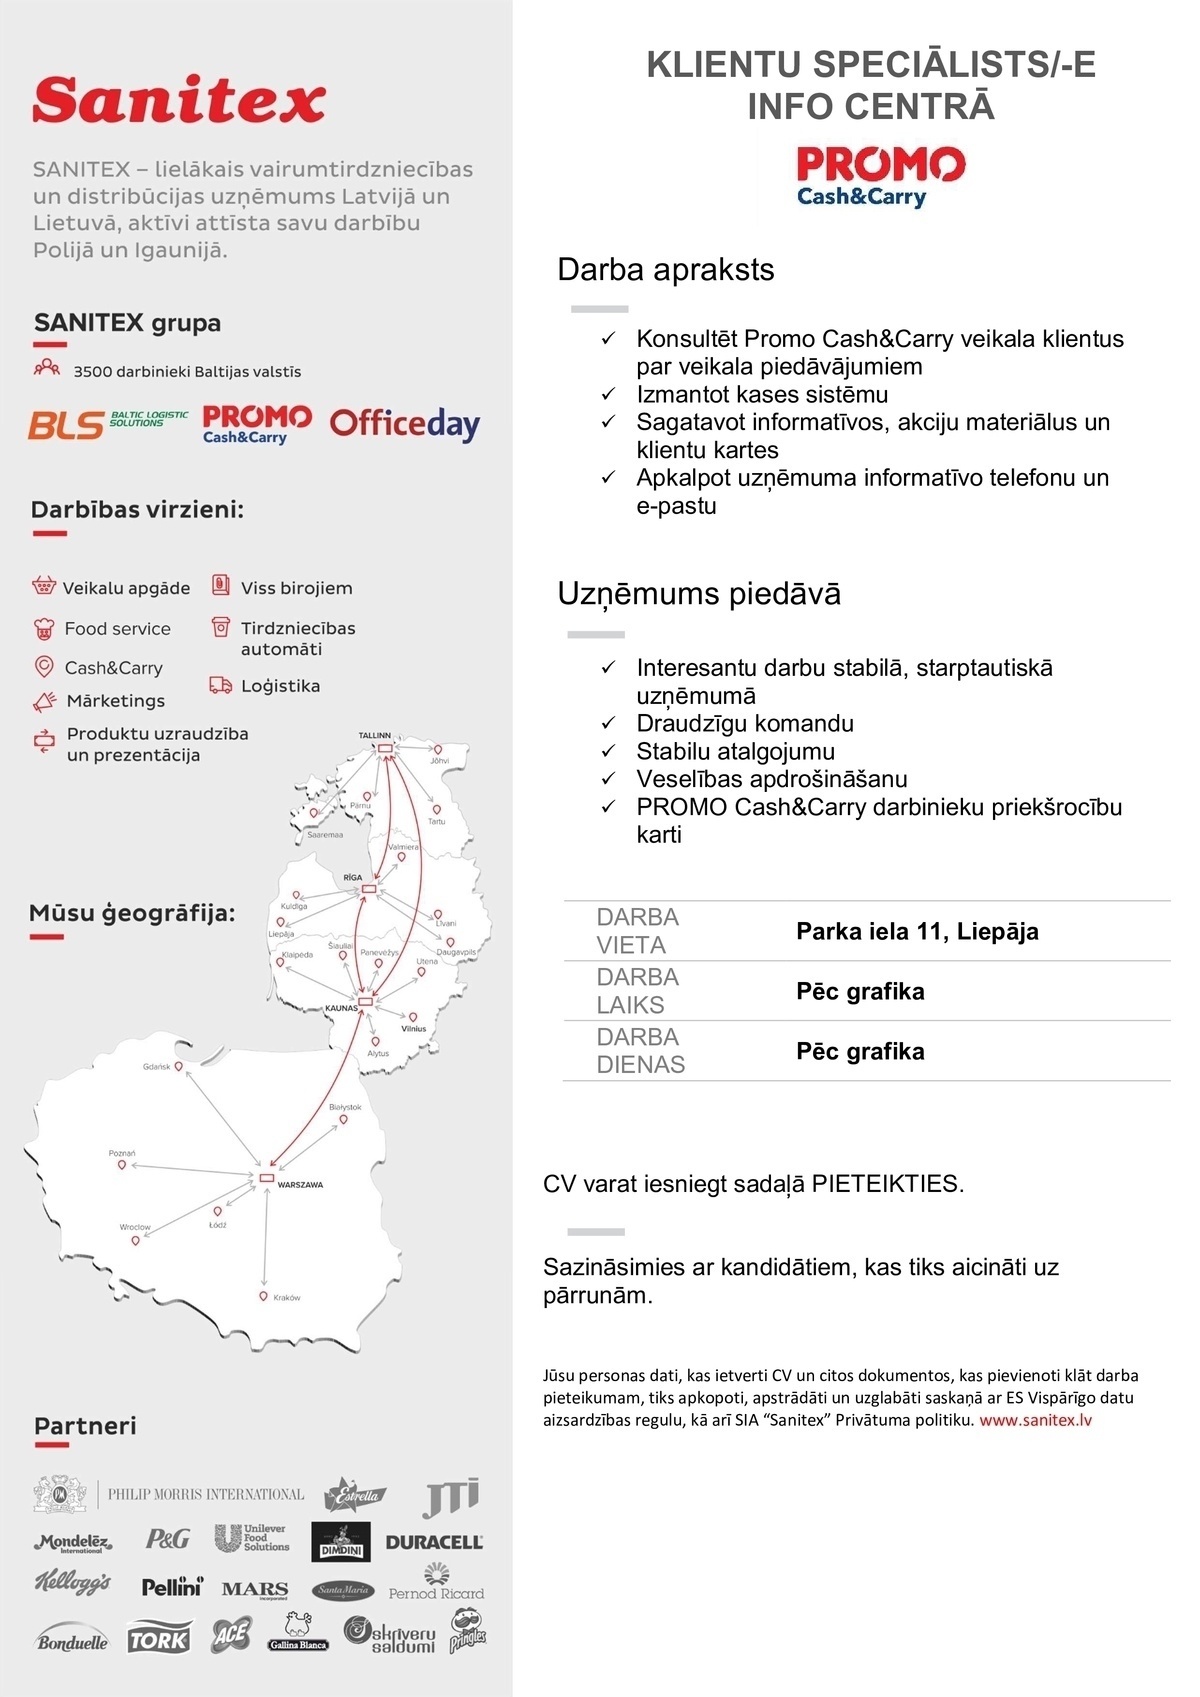 Sanitex, SIA Klientu speciālists/-e info centrā